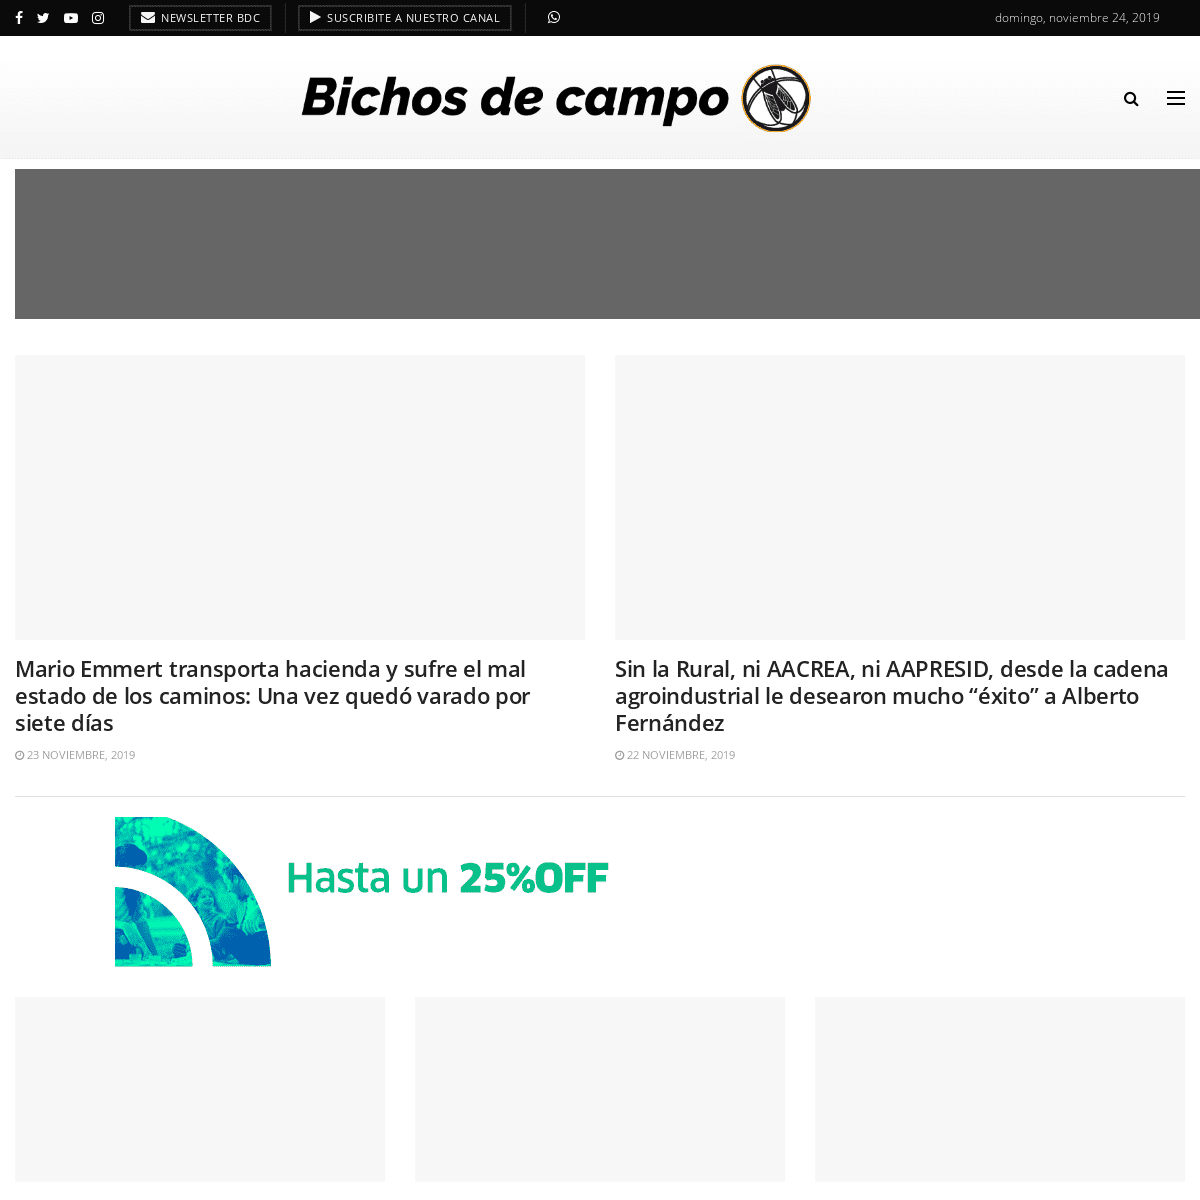 A complete backup of bichosdecampo.com